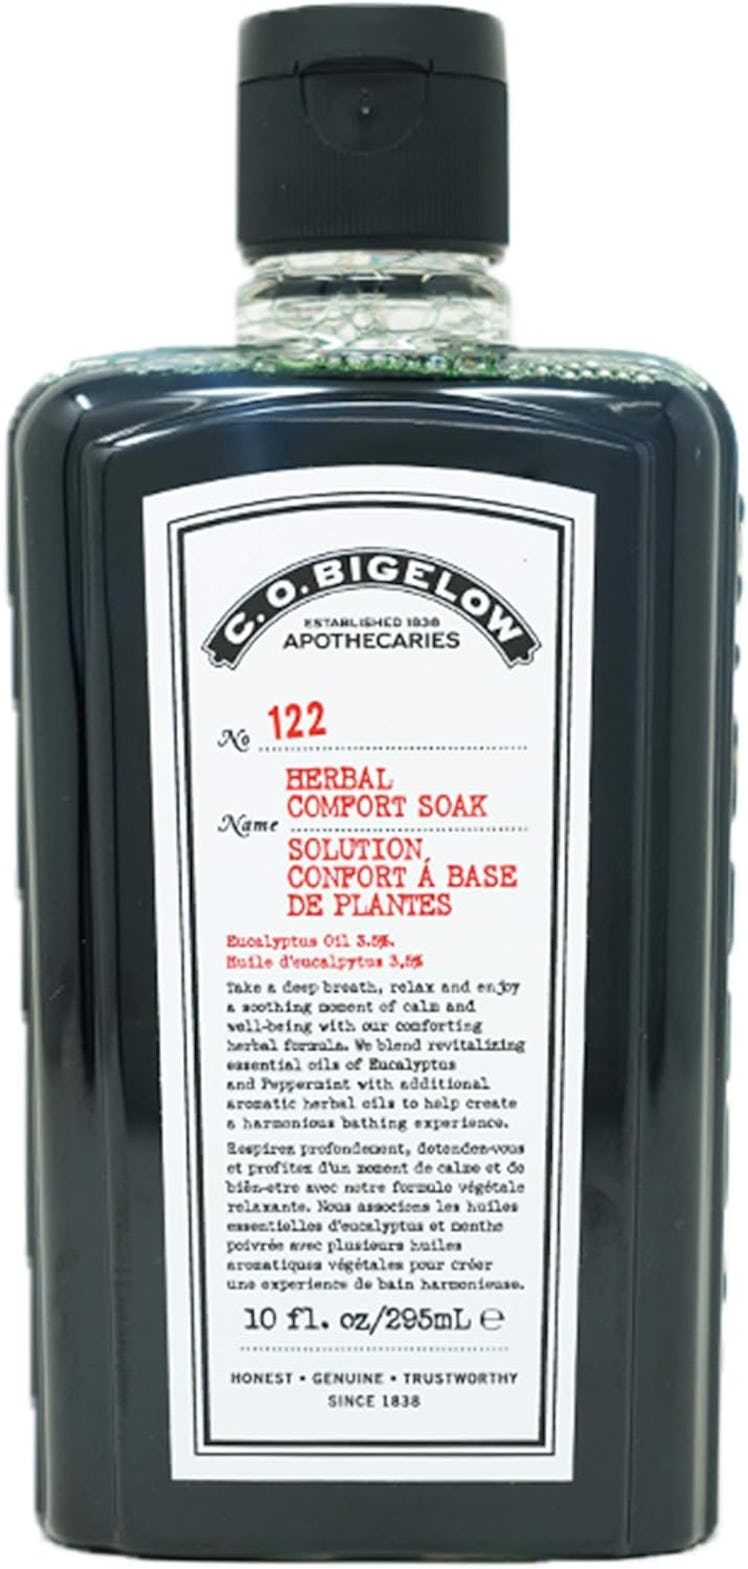 C.O. Bigelow Herbal Comfort Soak